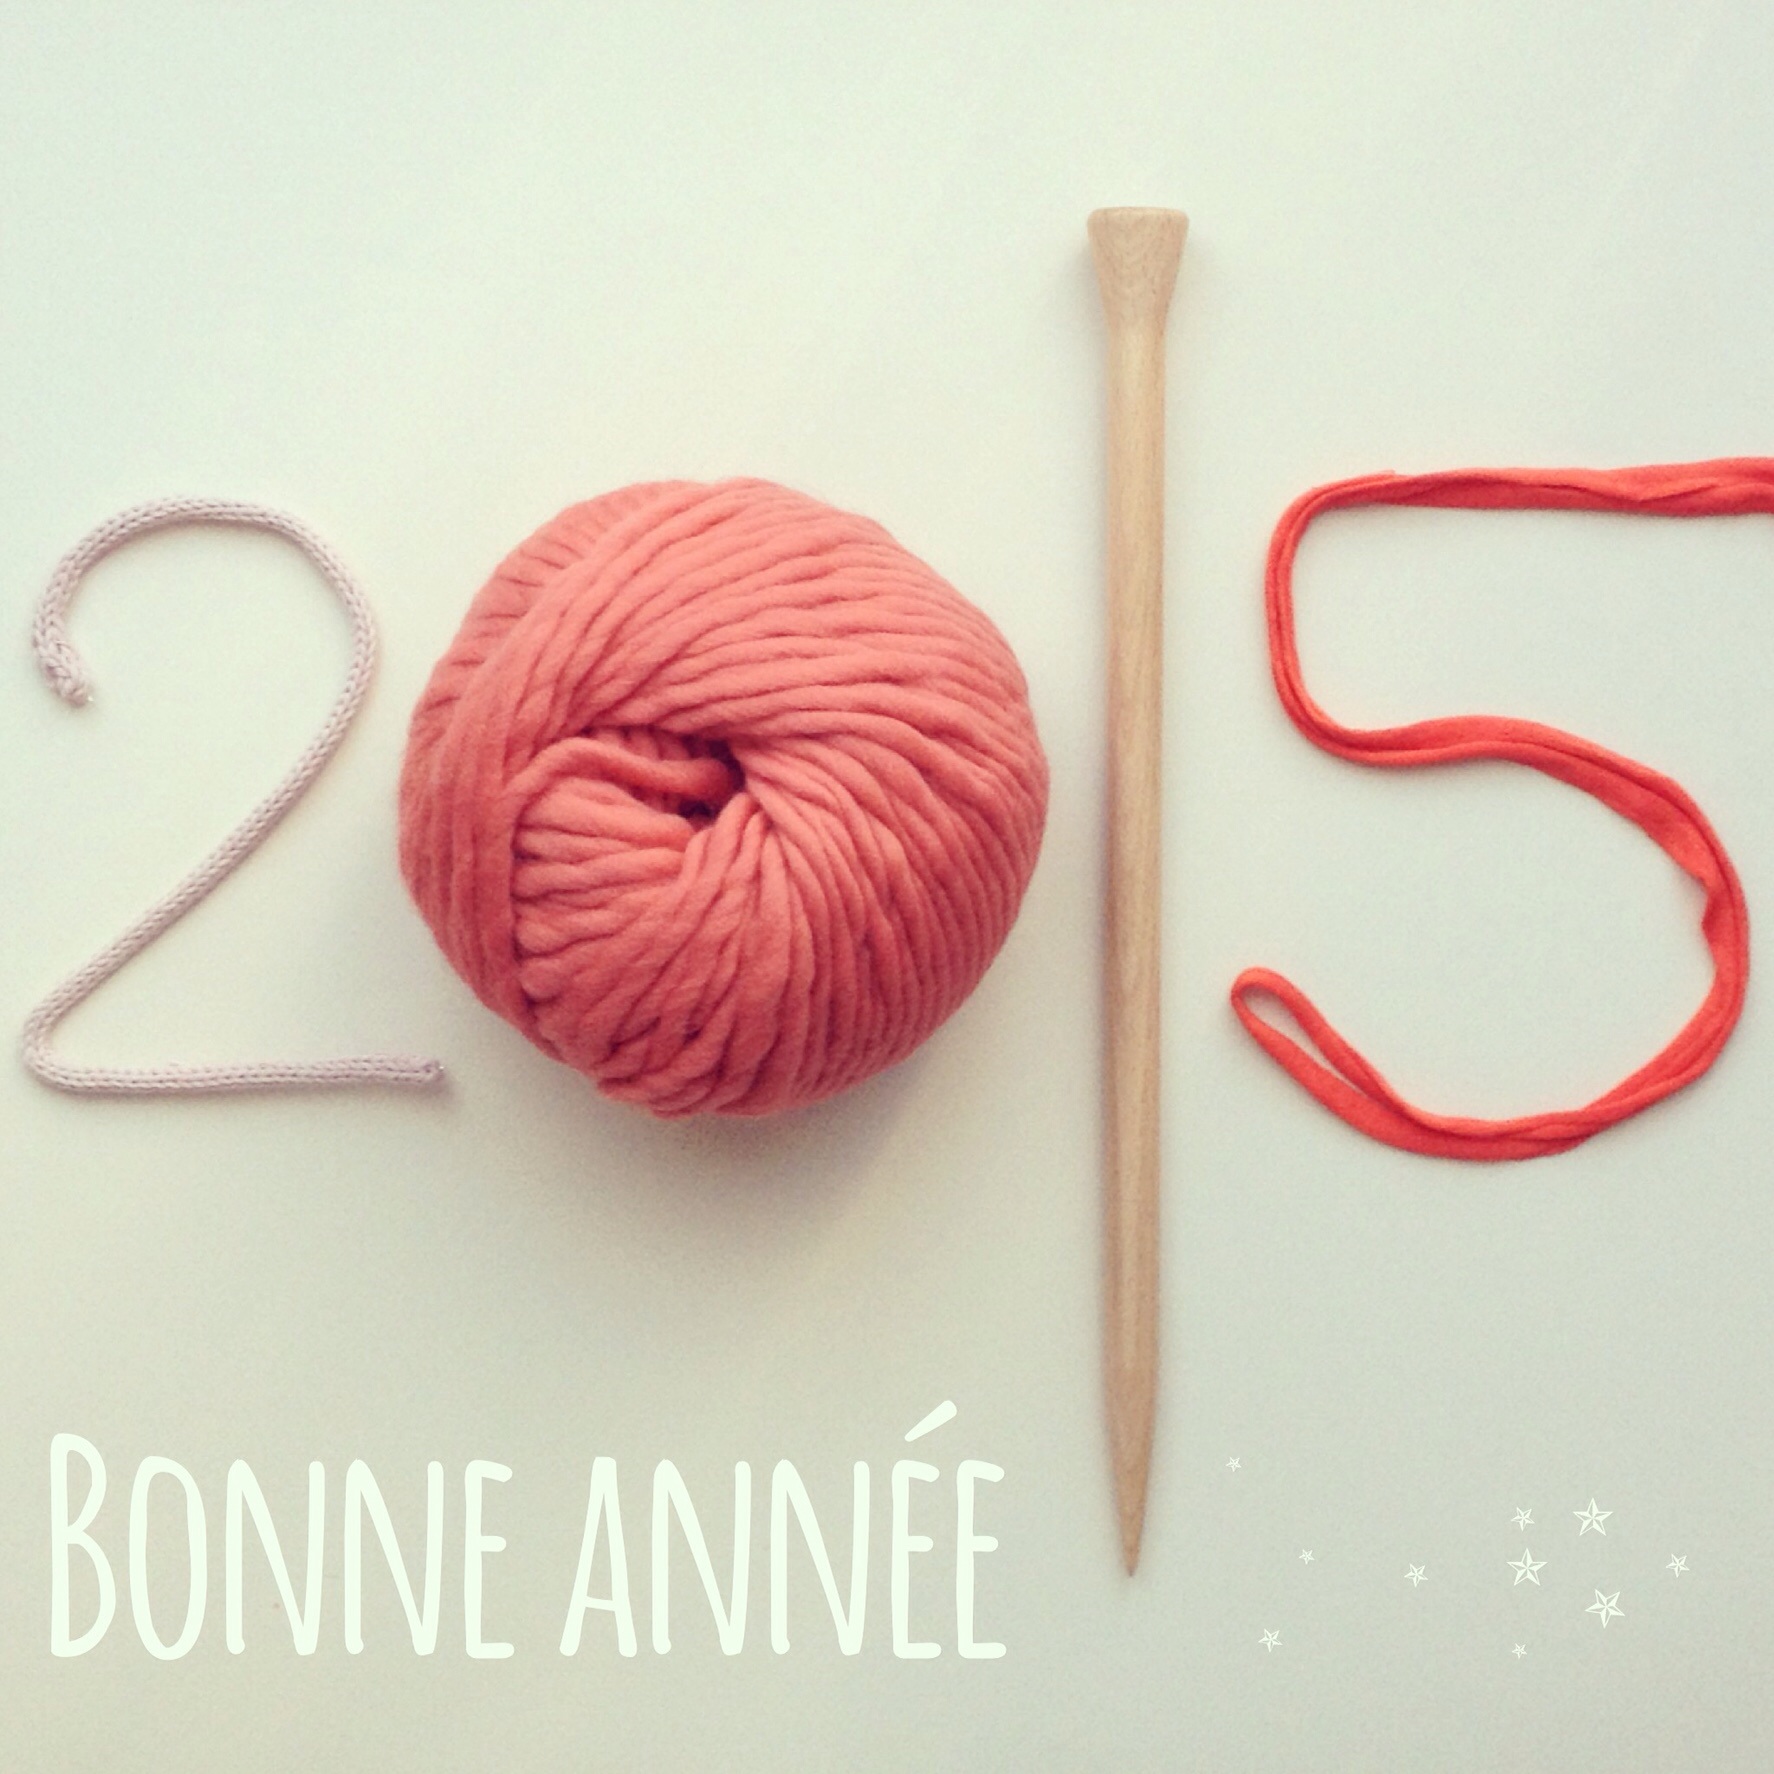 Bonne année 2015!